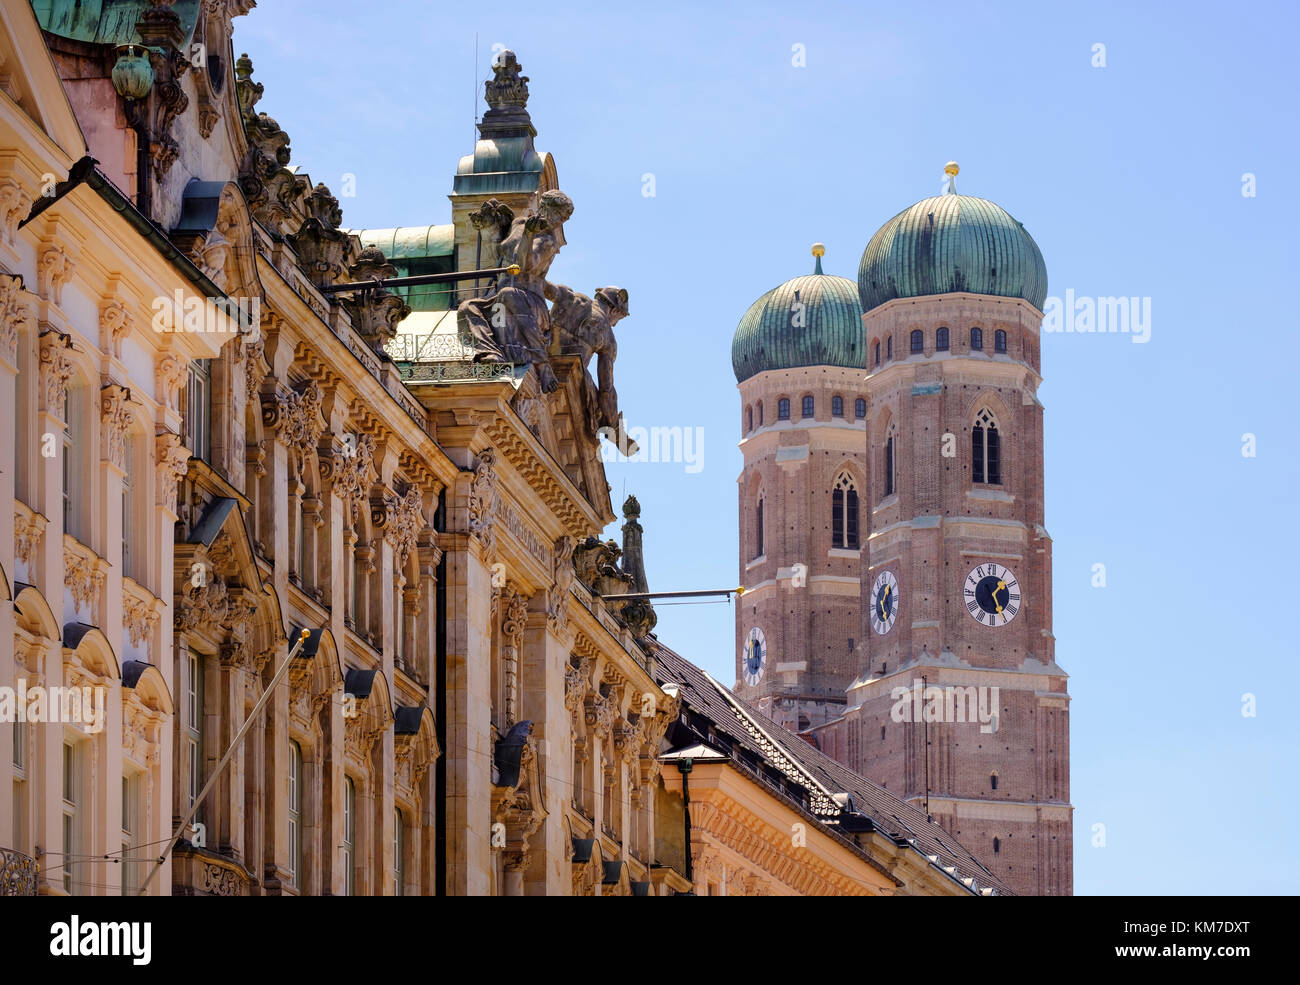 Fassaden in Kardinal-Faulhaber-Straße, Frauenkirche, Dom Altstadt, München, Oberbayern, Bayern, Deutschland Foto Stock